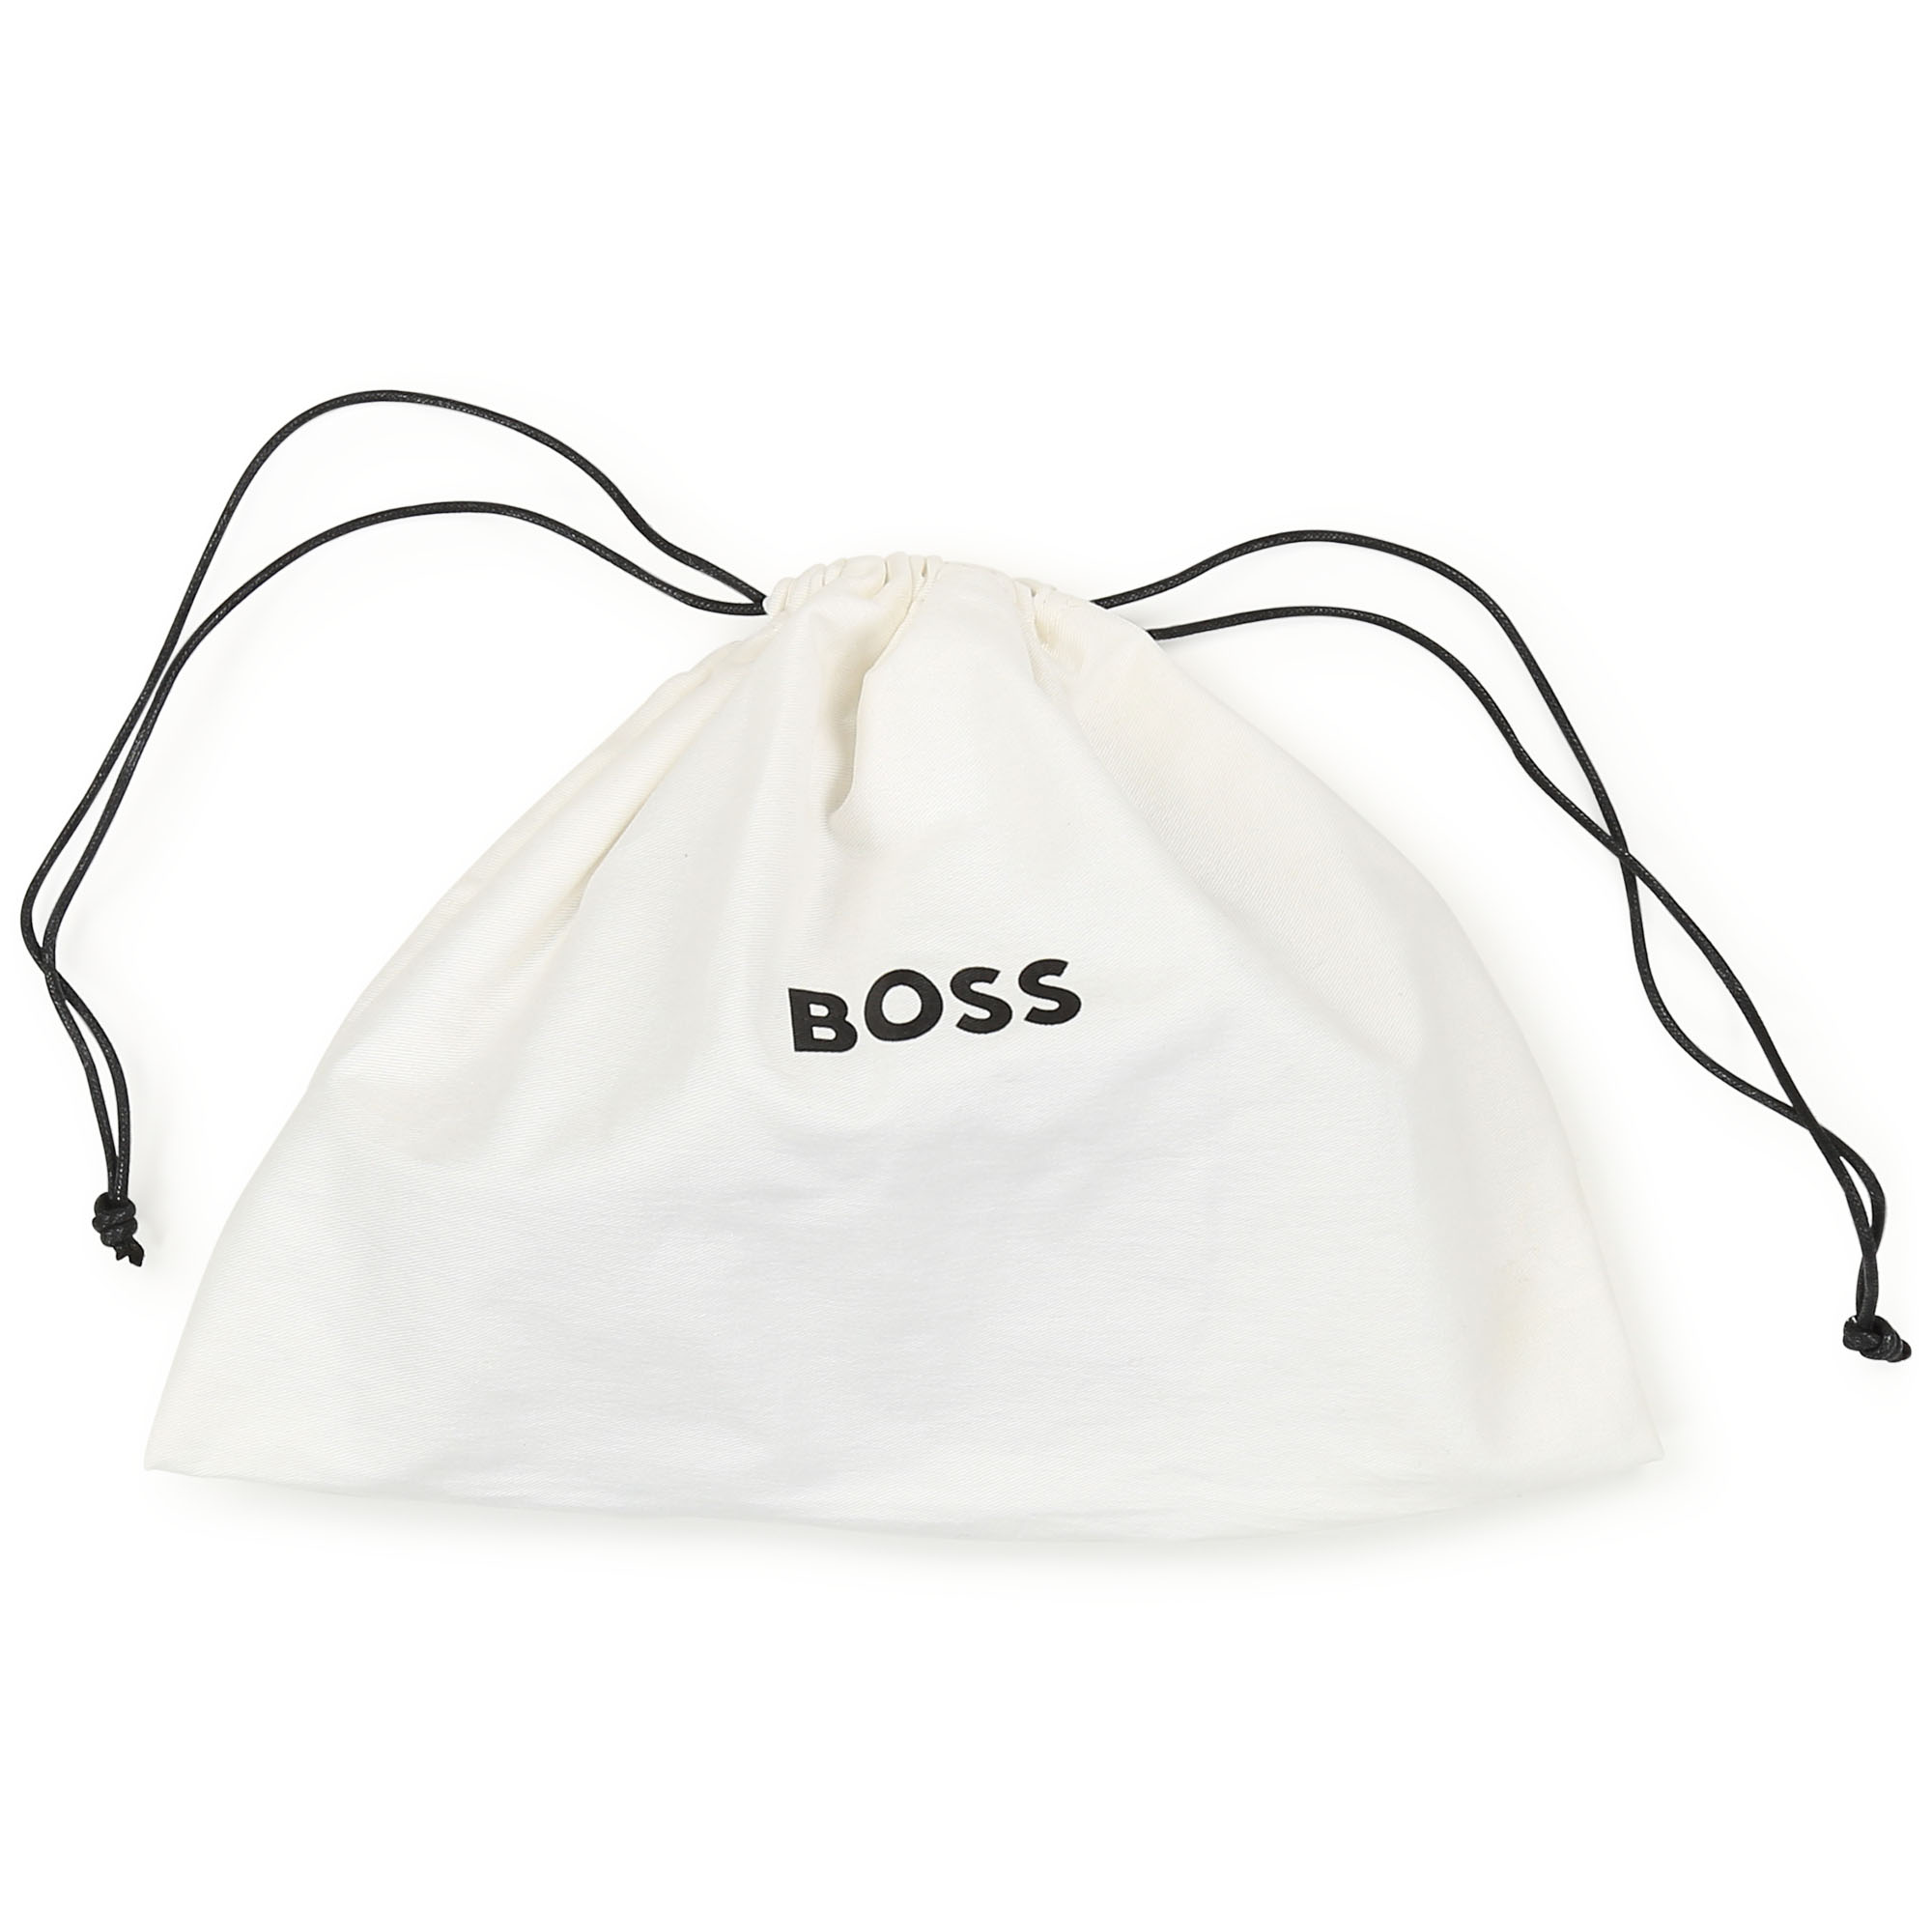 Coated canvas belt bag BOSS for GIRL